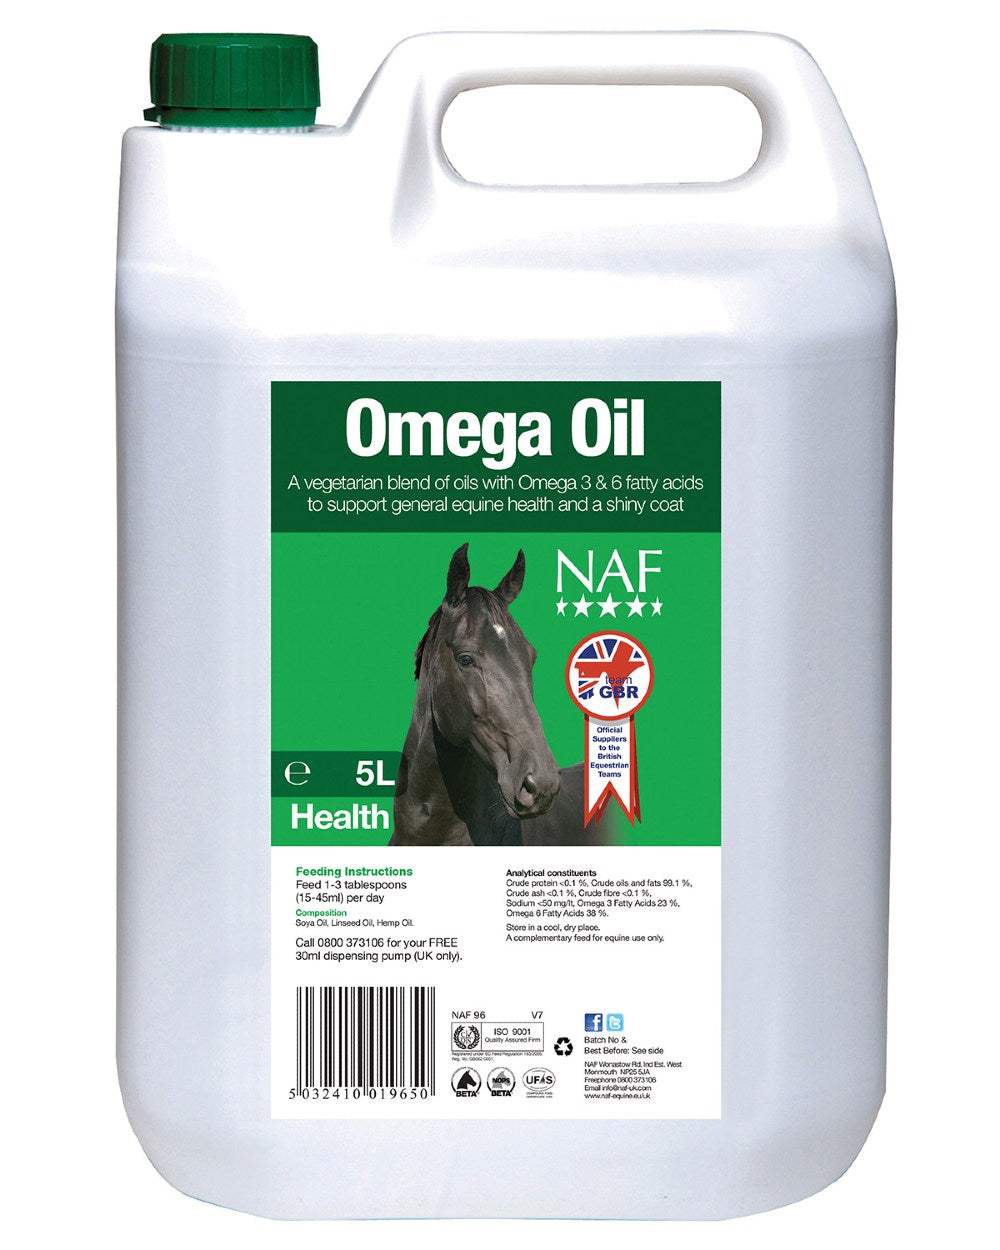 NAF Omega Oil 5L on white background